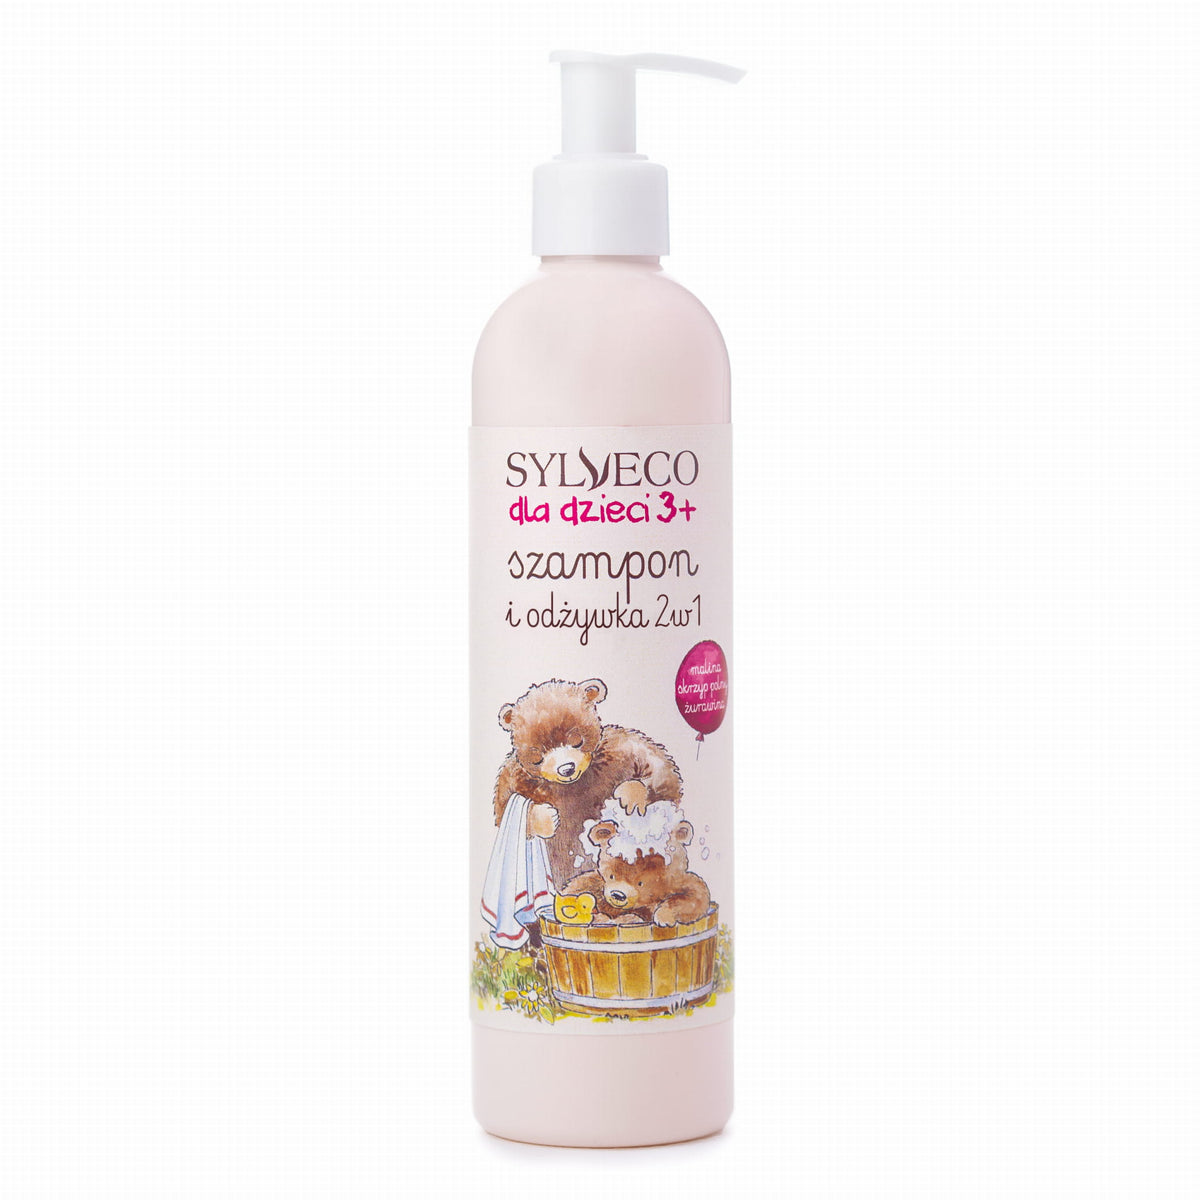 2 in 1 Shampoo und Conditioner für 3 Kinder + Himbeer Schachtelhalm Cranberry 300ml - SYLVECO